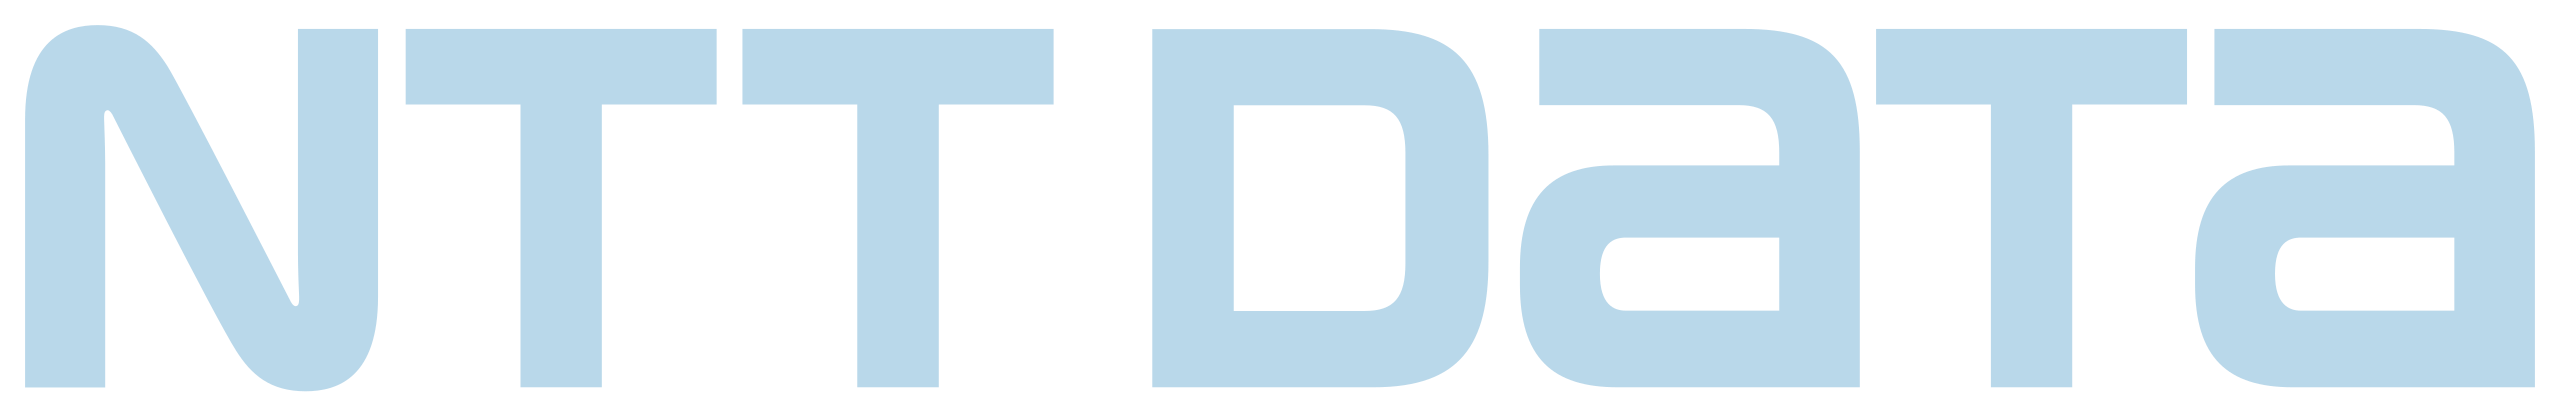 NTTDATA-logo